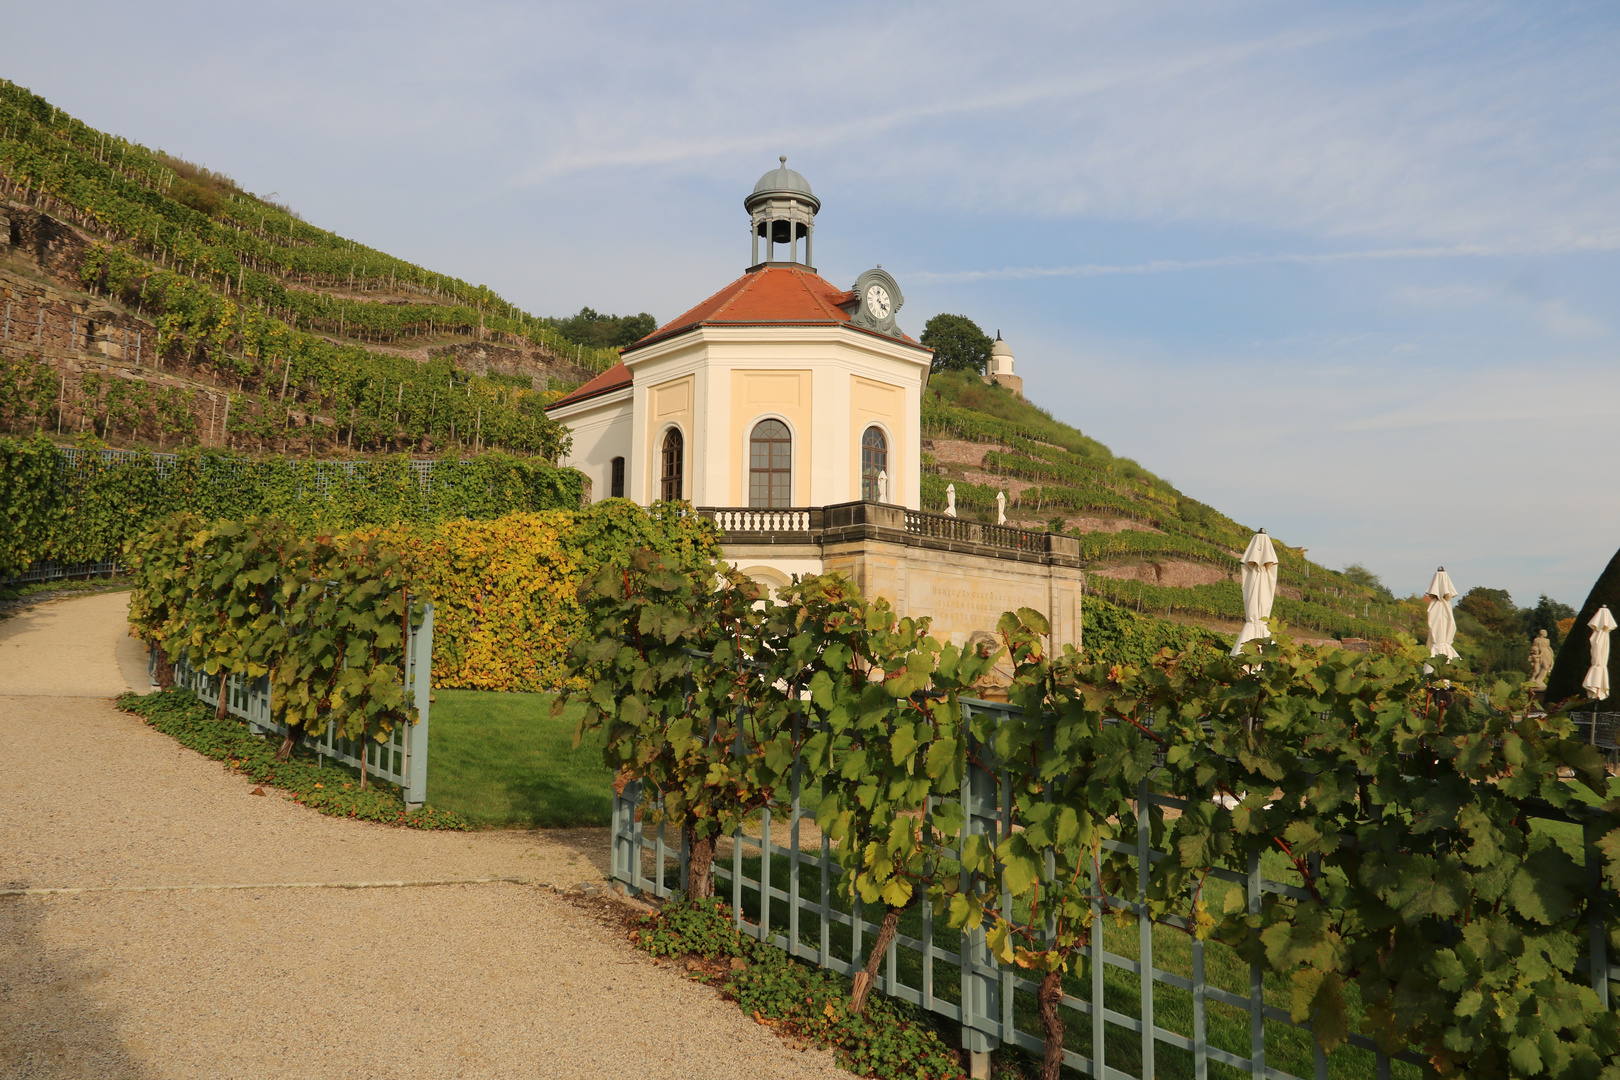 Herbst auf Schloss Wackerbarth